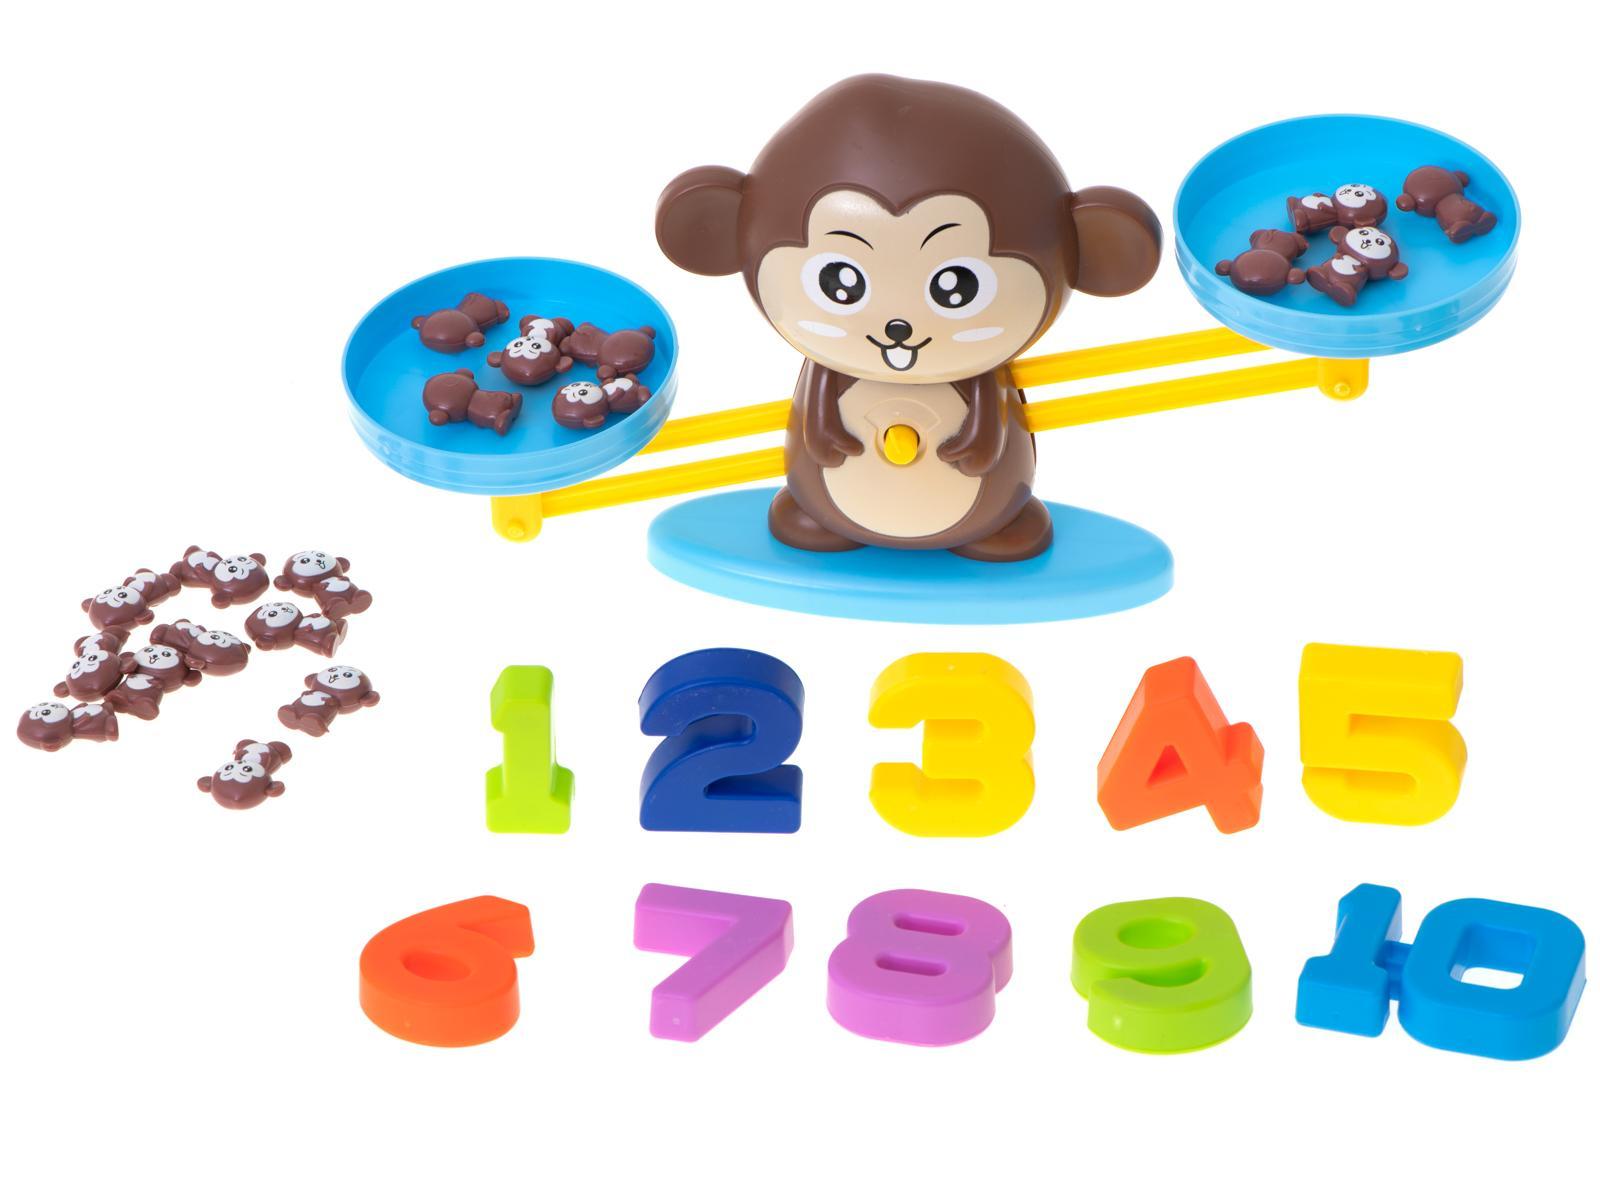 Waga szalkowa edukacyjna nauka liczenia małpka duża dla dzieci 34,5x9,5x8 cm 8 Full Screen